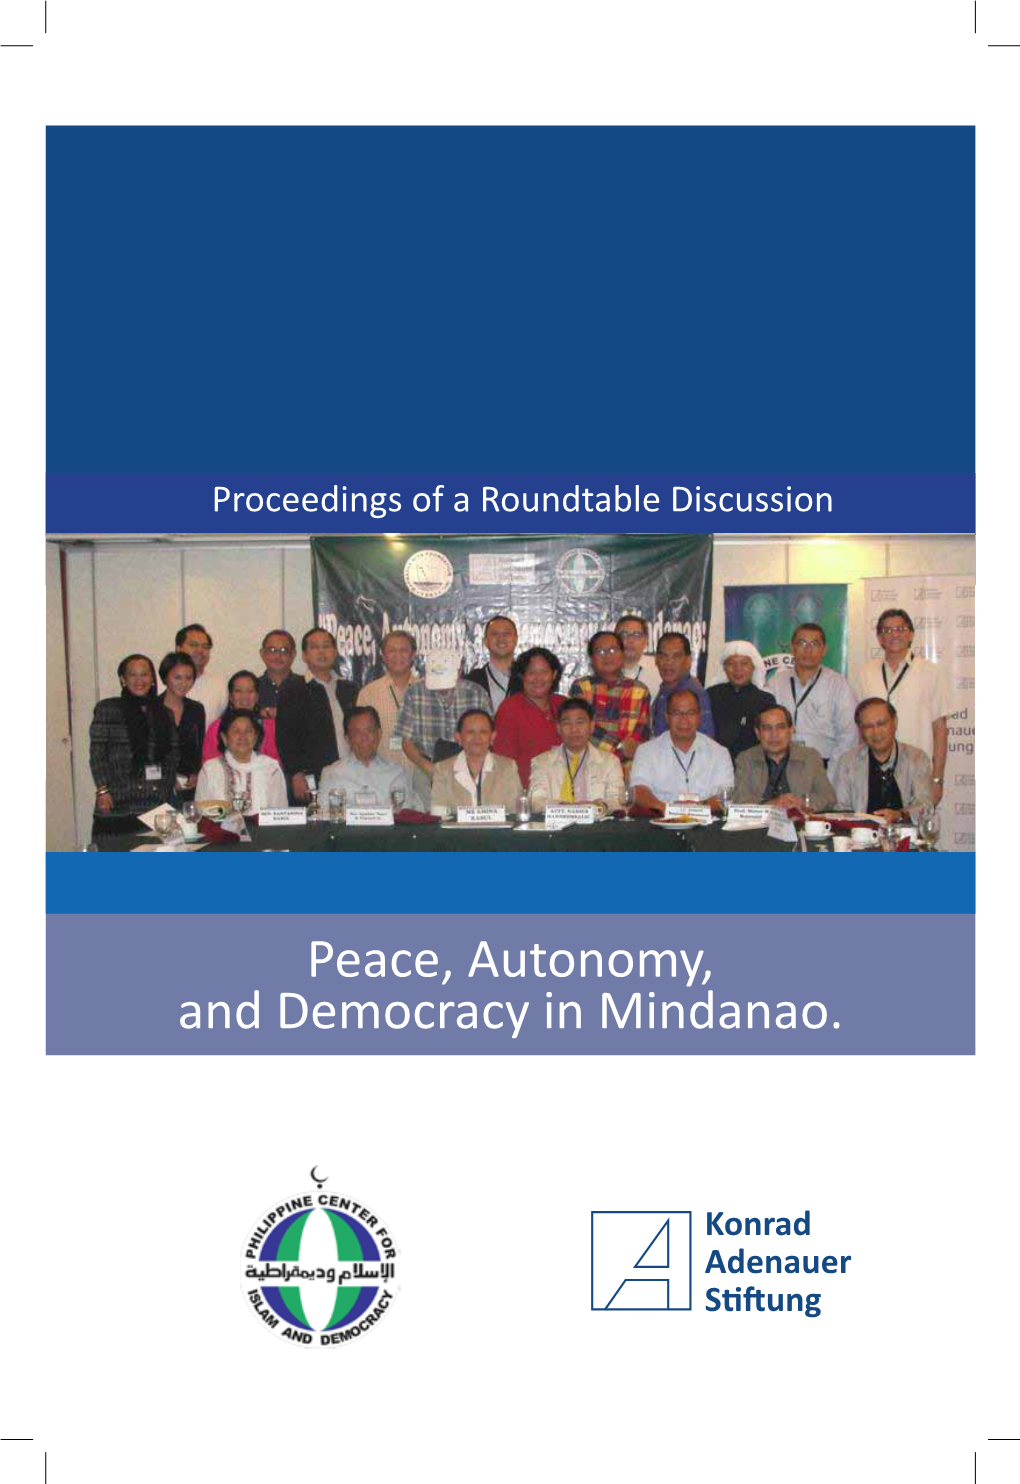 Peace, Autonomy, and Democracy in Mindanao